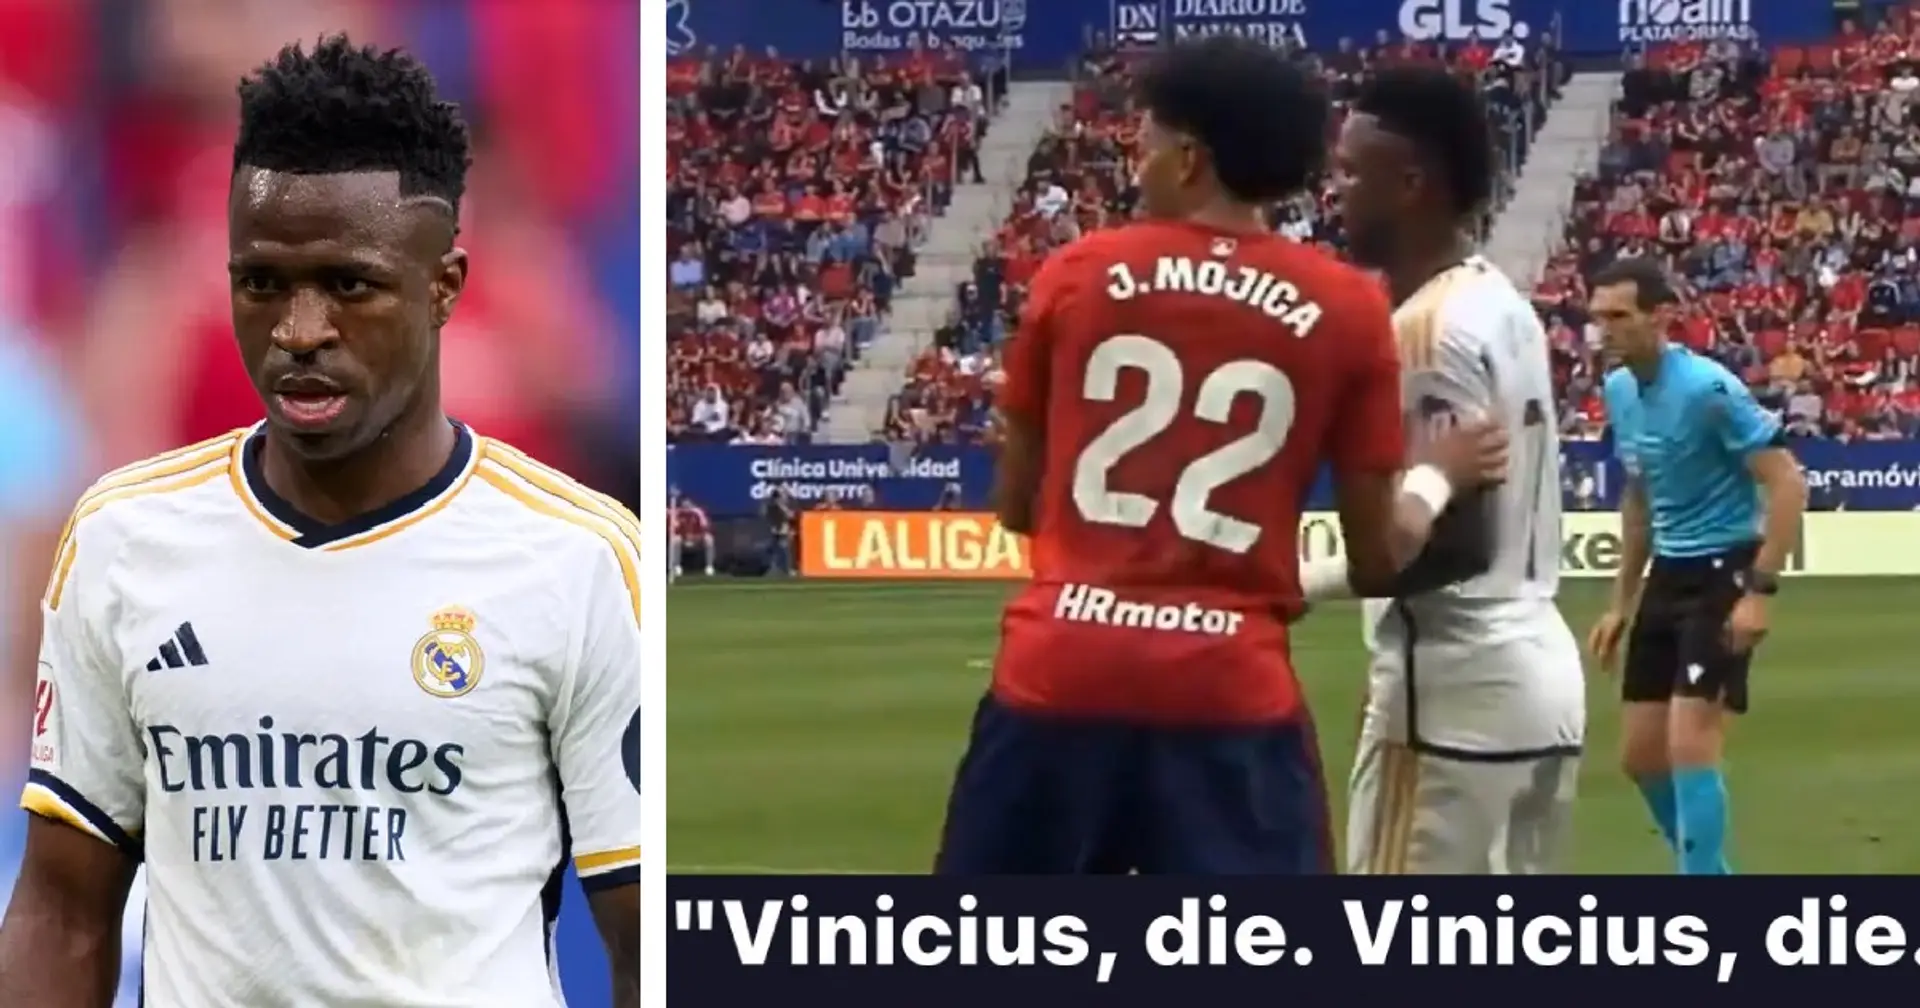 Des vidéos montrent des supporters d'Osasuna scandant "Vinicius, crêve" - filmées